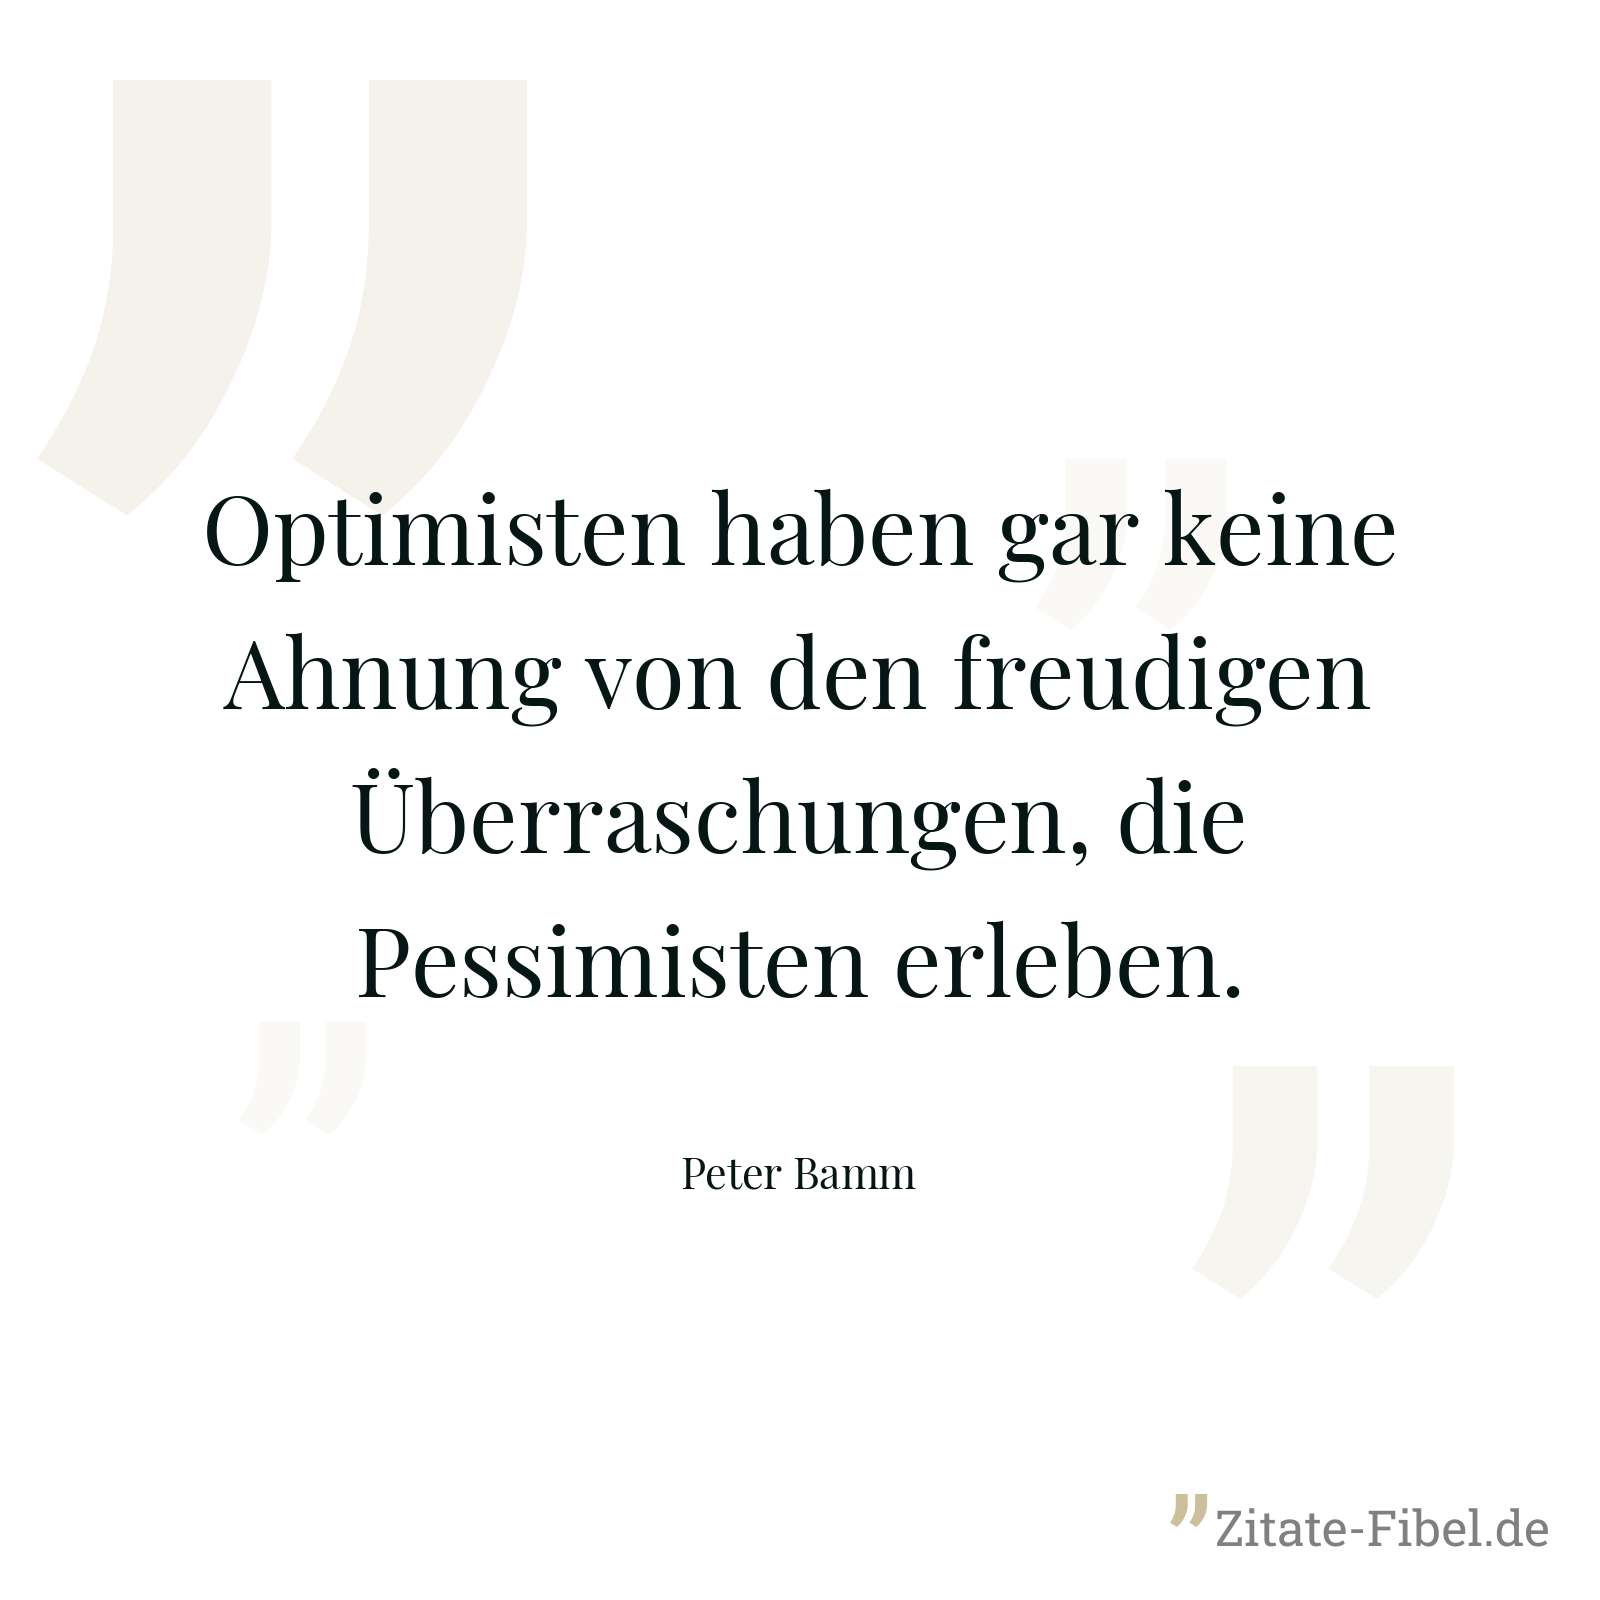 Optimisten haben gar keine Ahnung von den freudigen Überraschungen, die Pessimisten erleben. - Peter Bamm